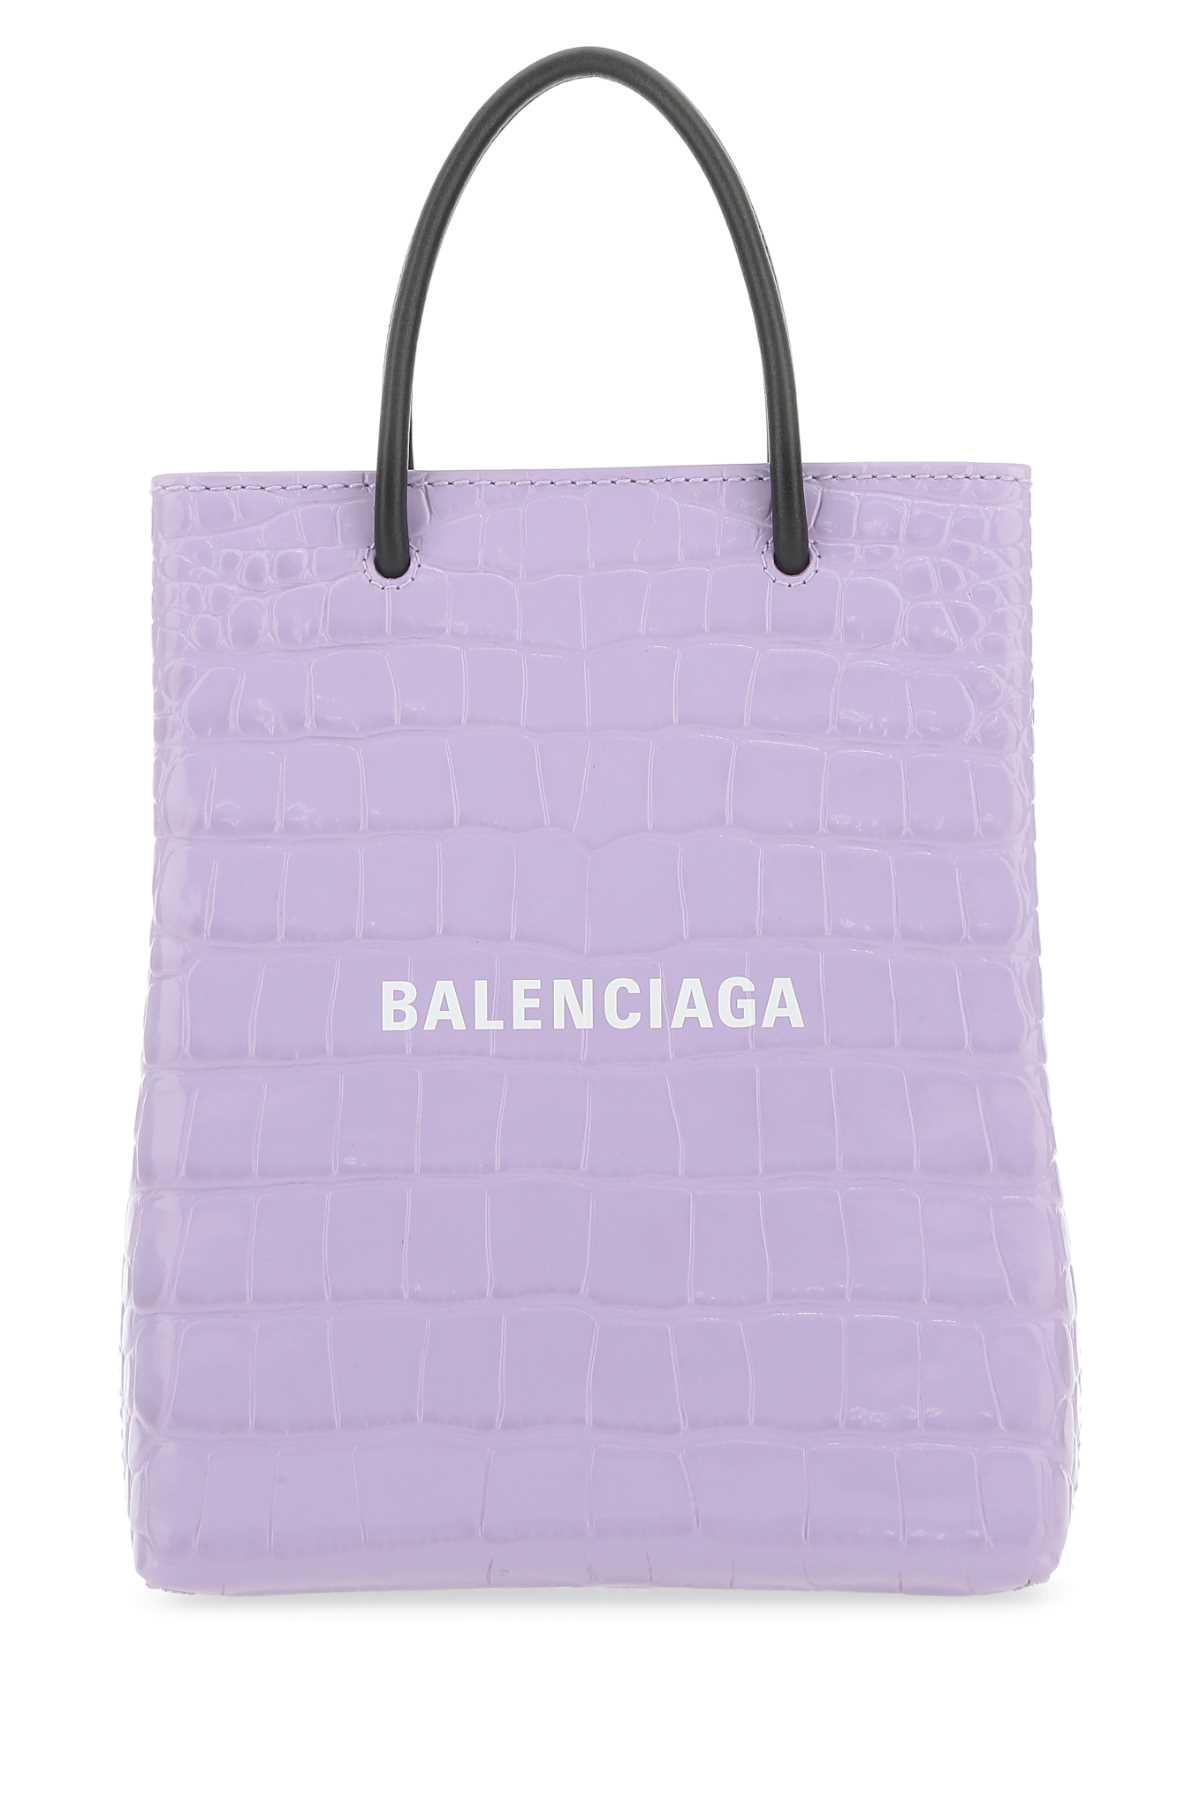 Balenciaga Lilac Leather Handbag